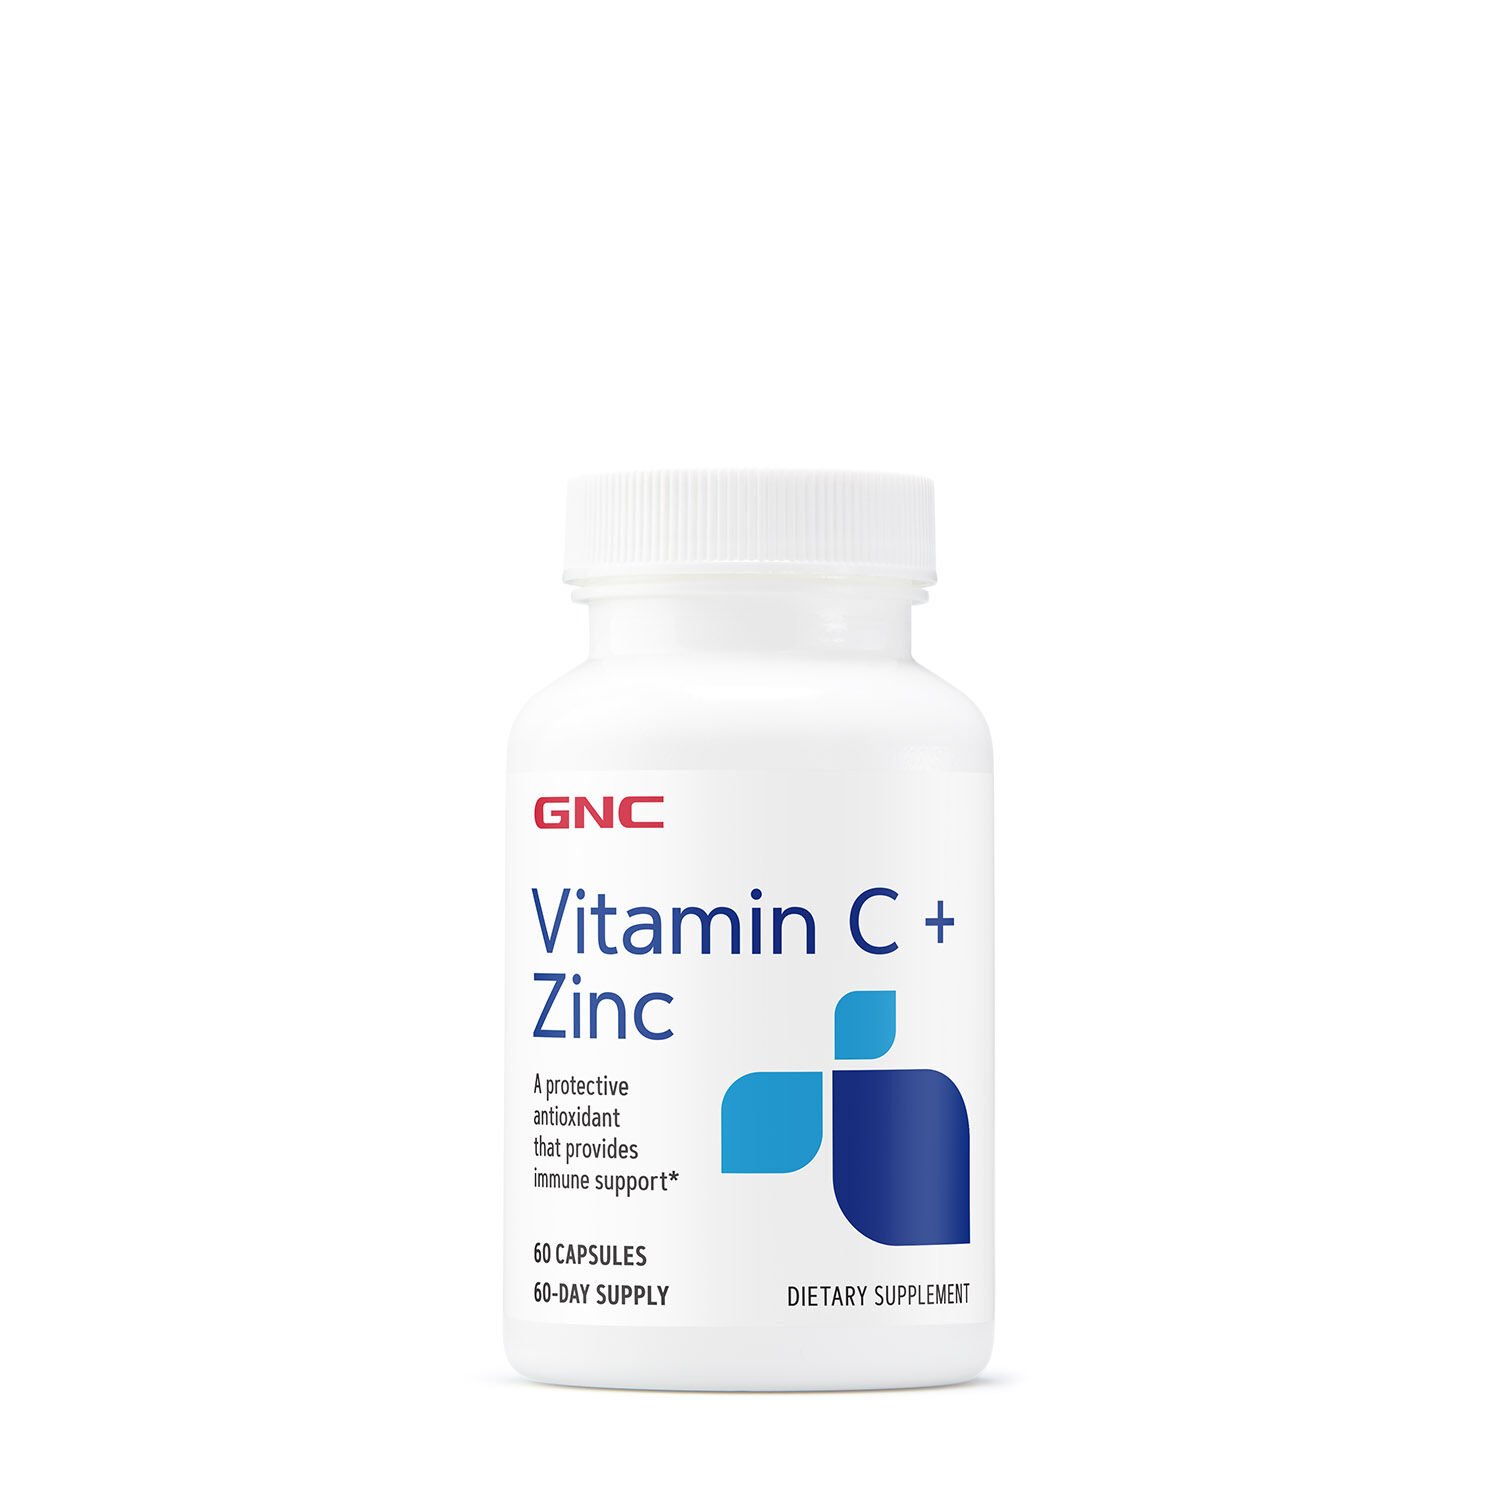 Витамины и минералы GNC Vitamin C + Zinc, 60 капсул,  мл, GNC. Витамины и минералы. Поддержание здоровья Укрепление иммунитета 